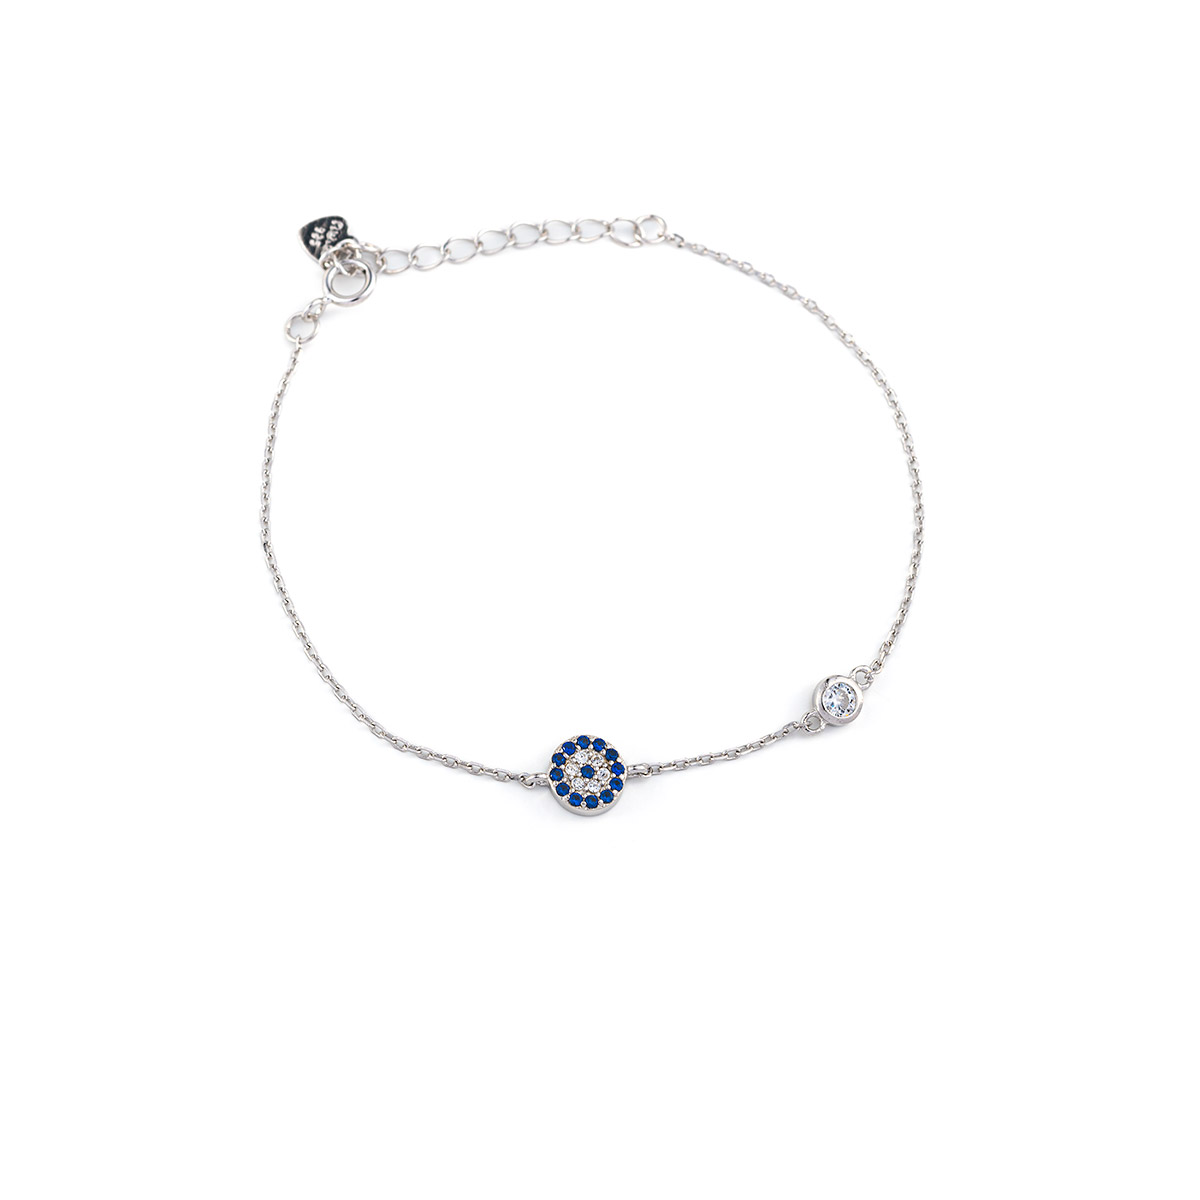 Sterling silver Eye Chain bracelet with Zircon